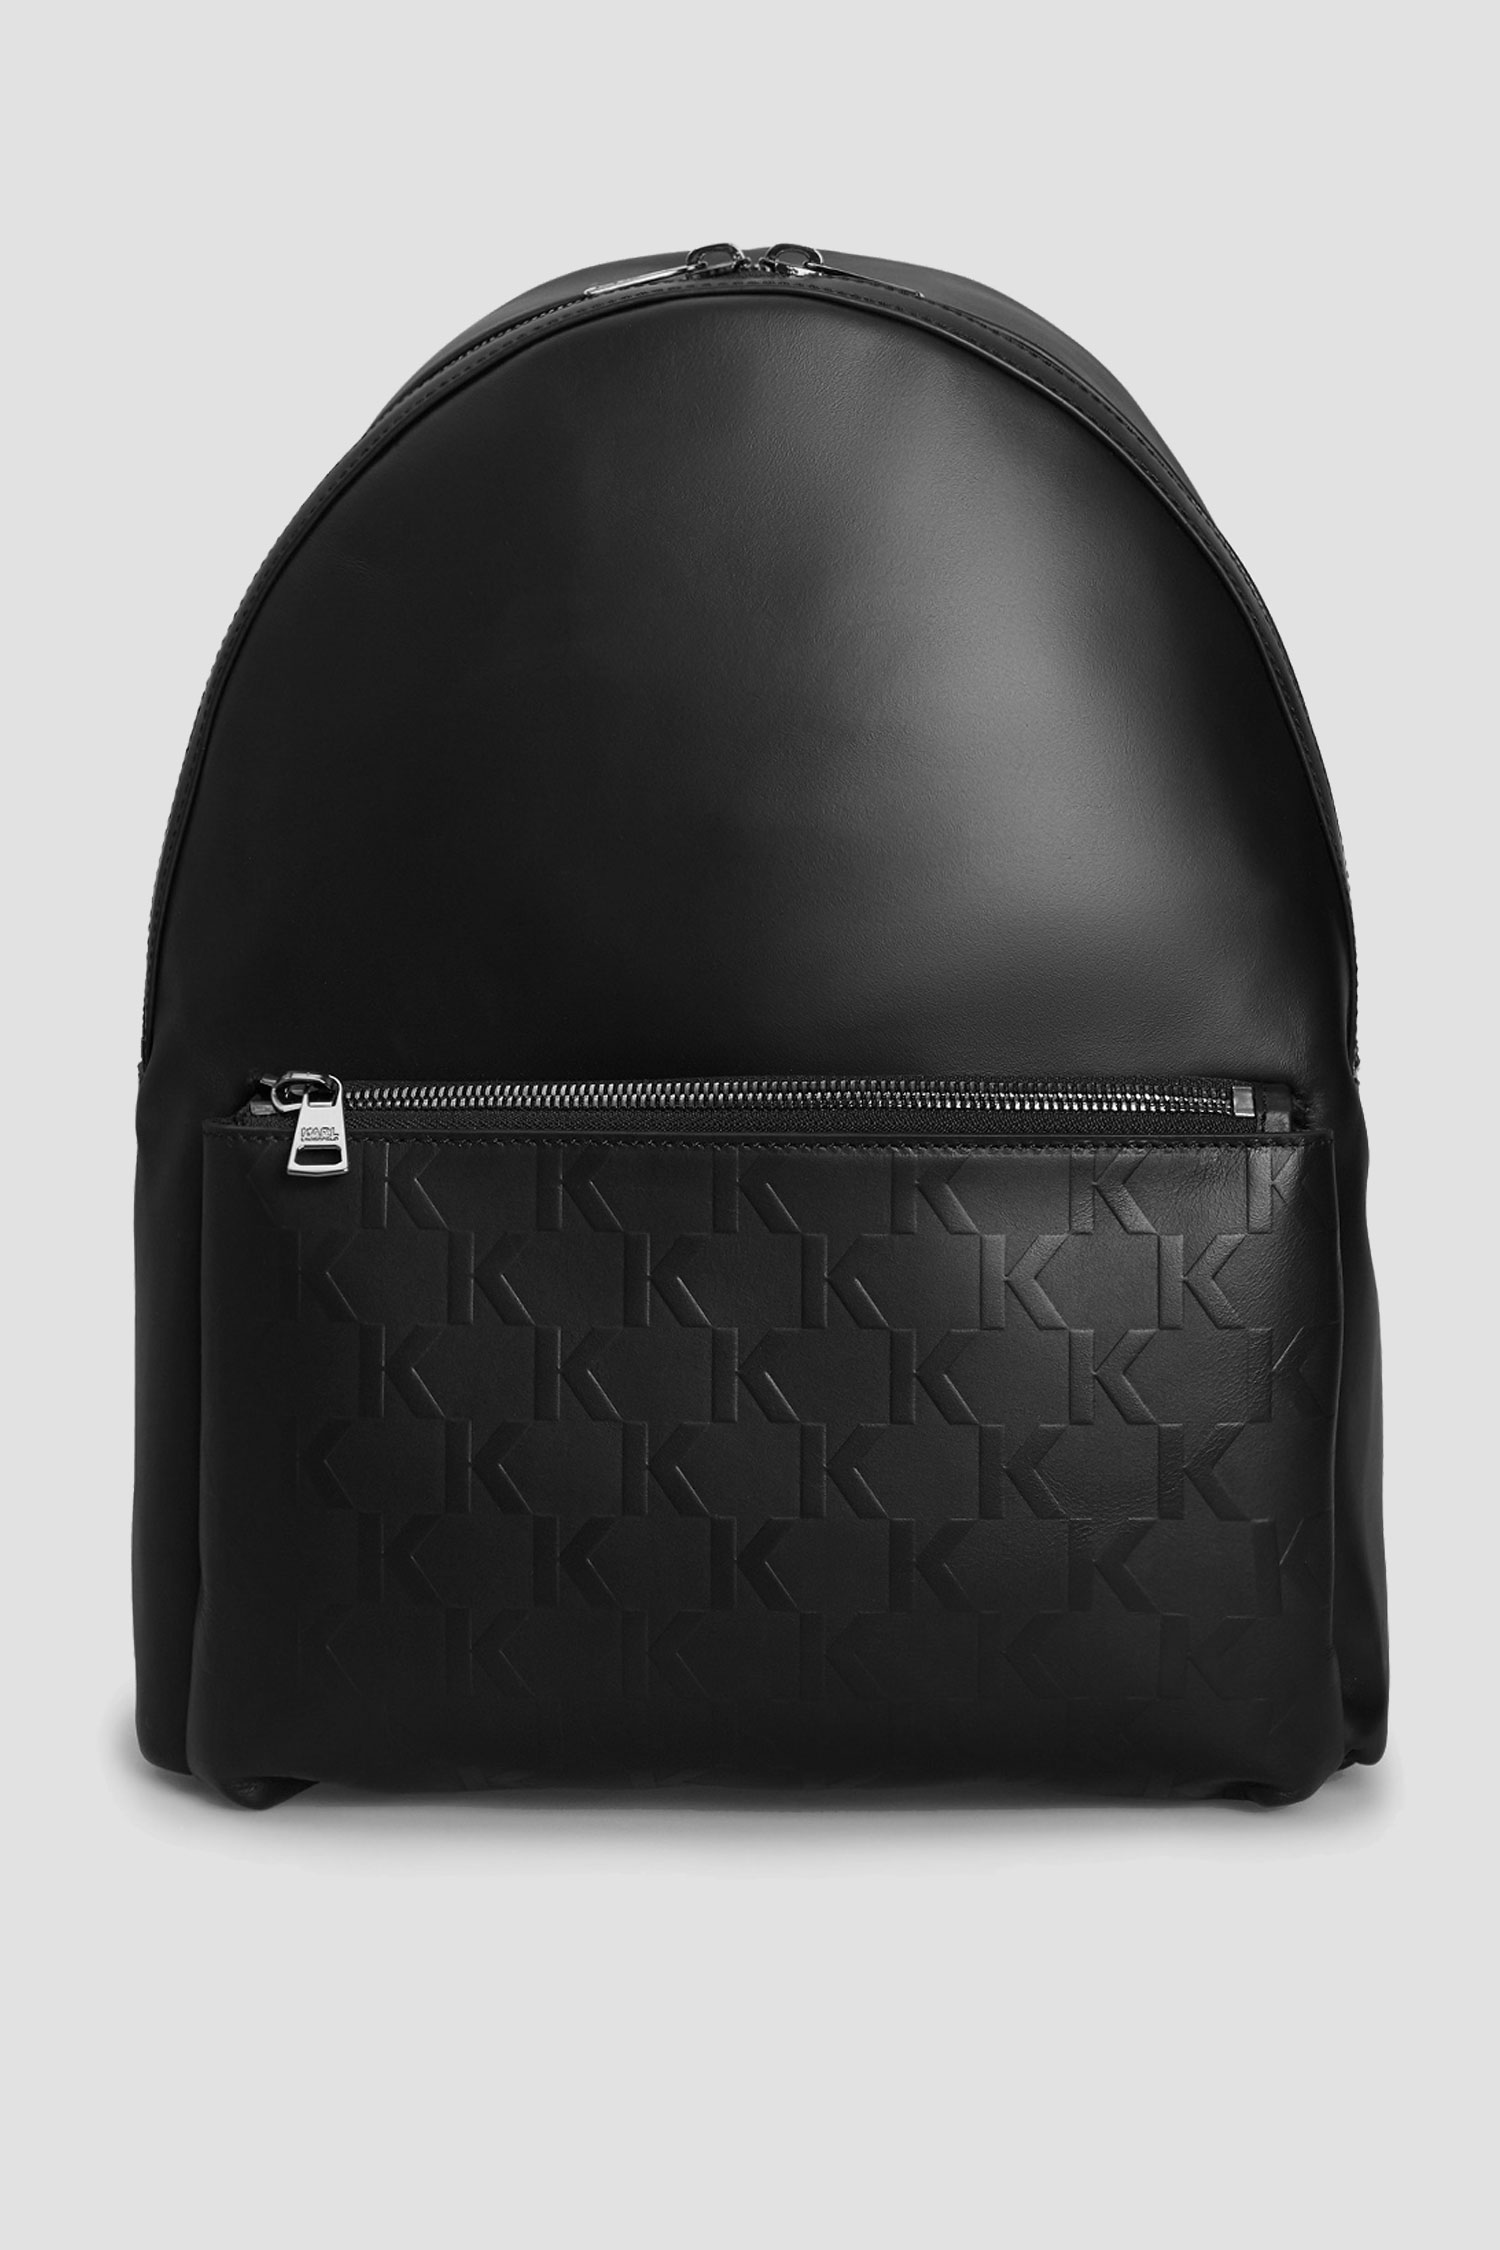 Чоловічий чорний шкіряний рюкзак Karl Lagerfeld 511453.815901;990